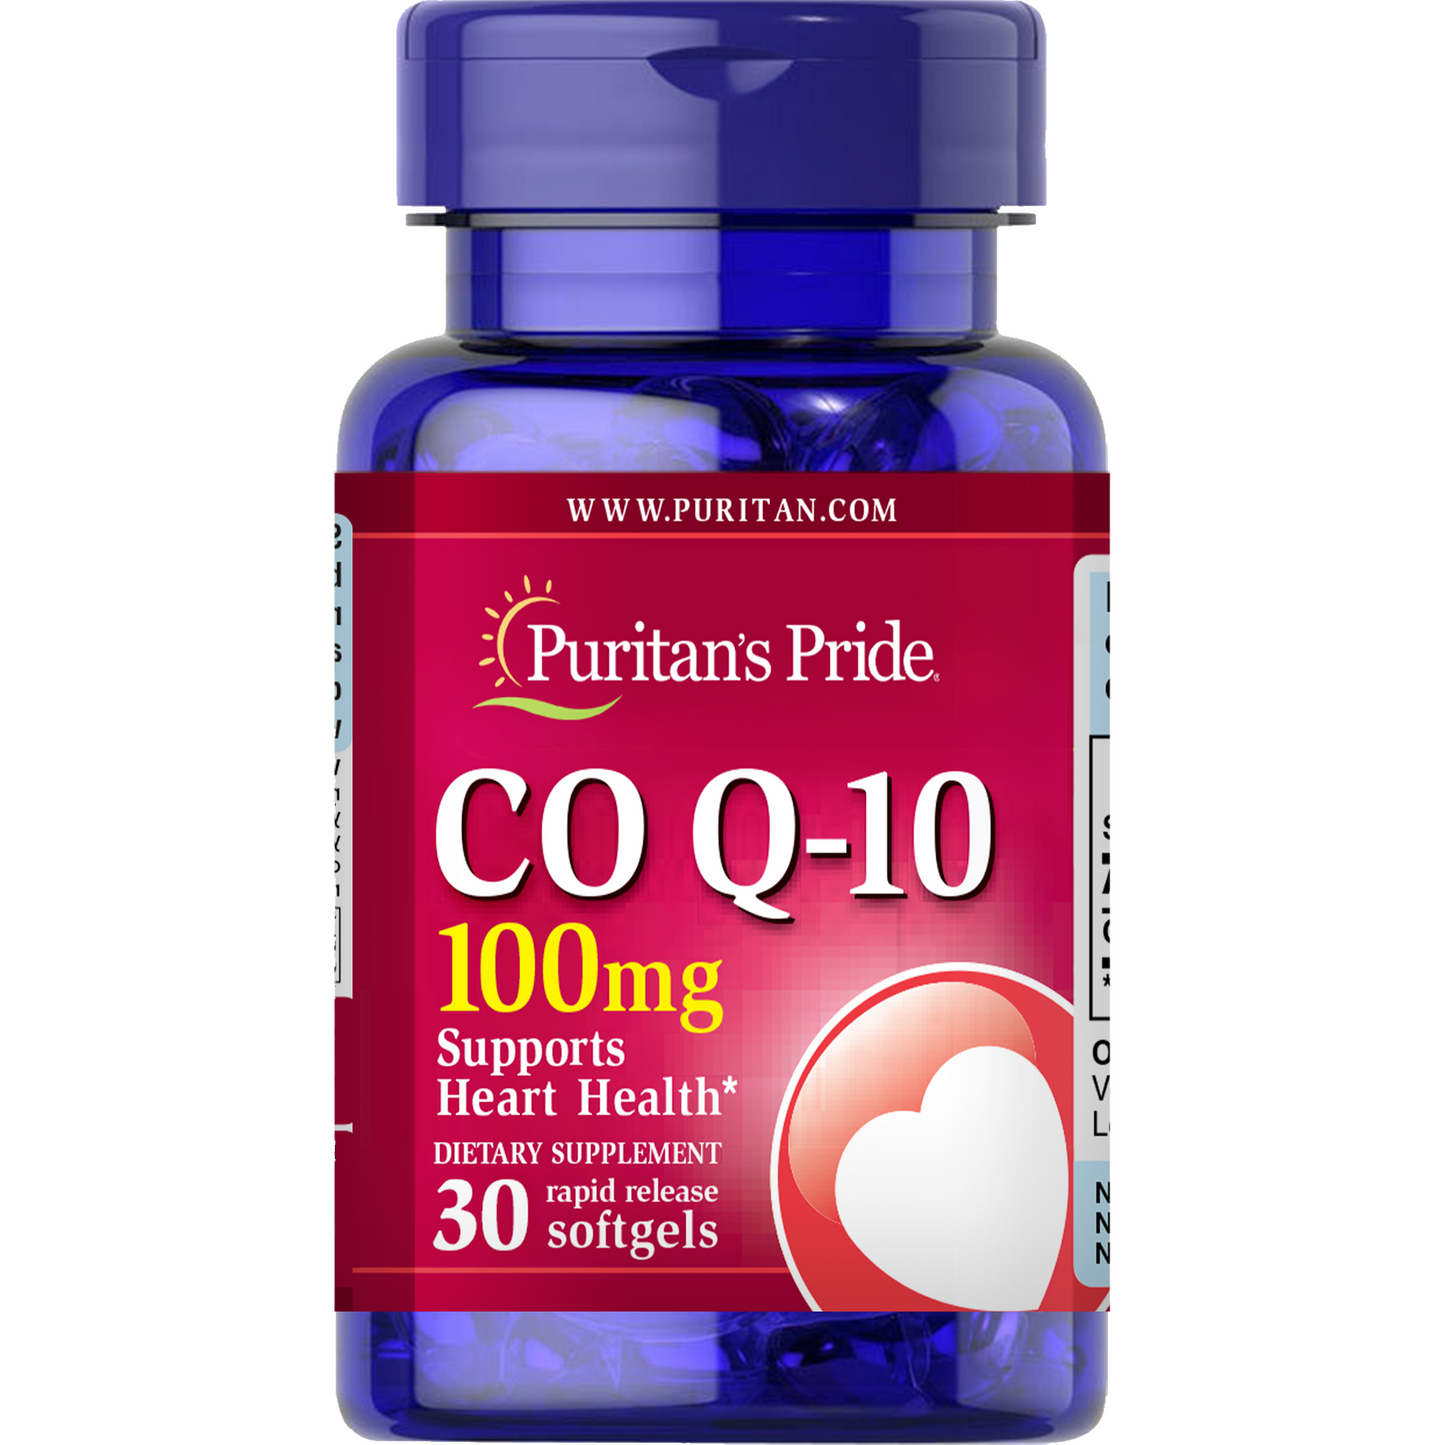 Co Q-10 100 mg 30 softgels | CoQ10 Coenzyme Q10